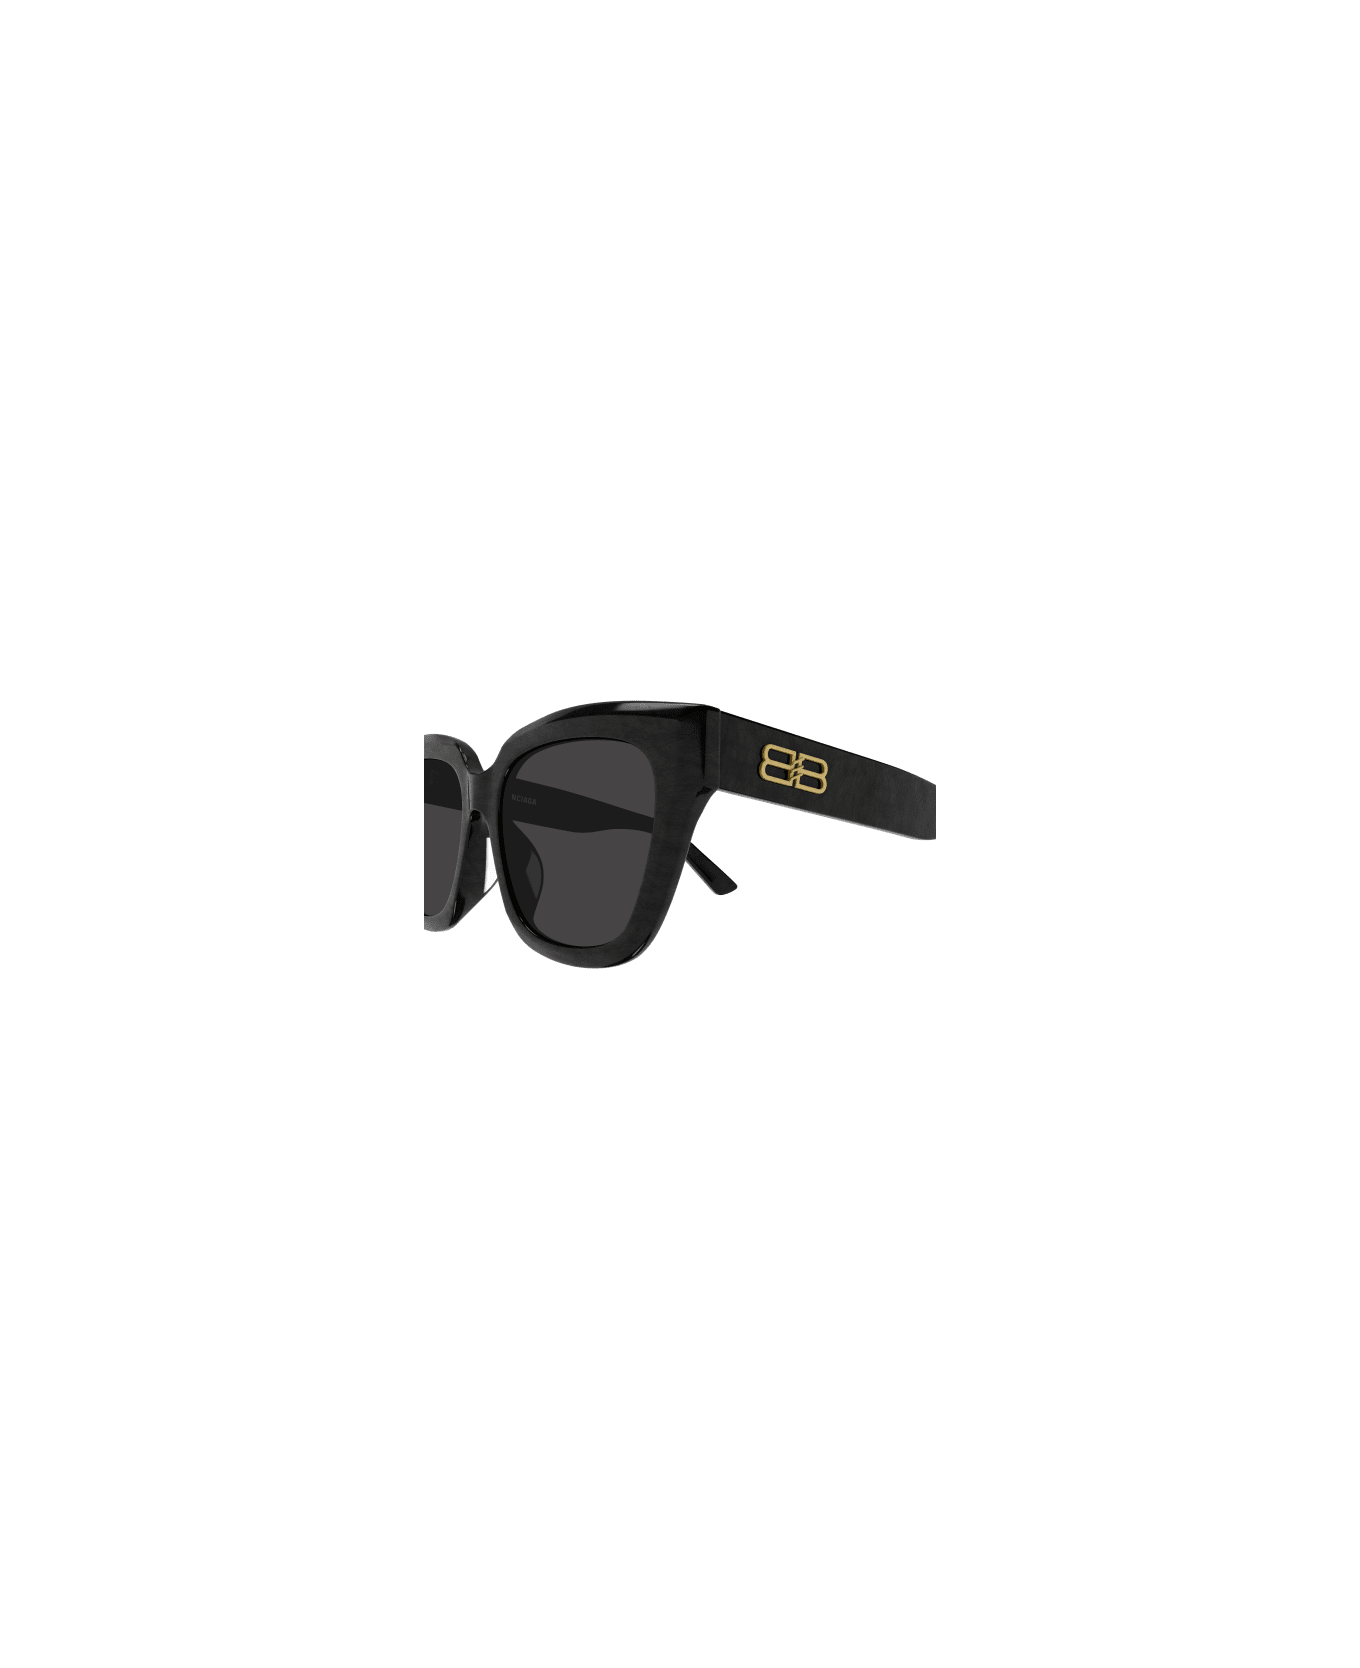 Balenciaga Eyewear 1e654id0a - Gucci Eyewear printed frame sunglasses